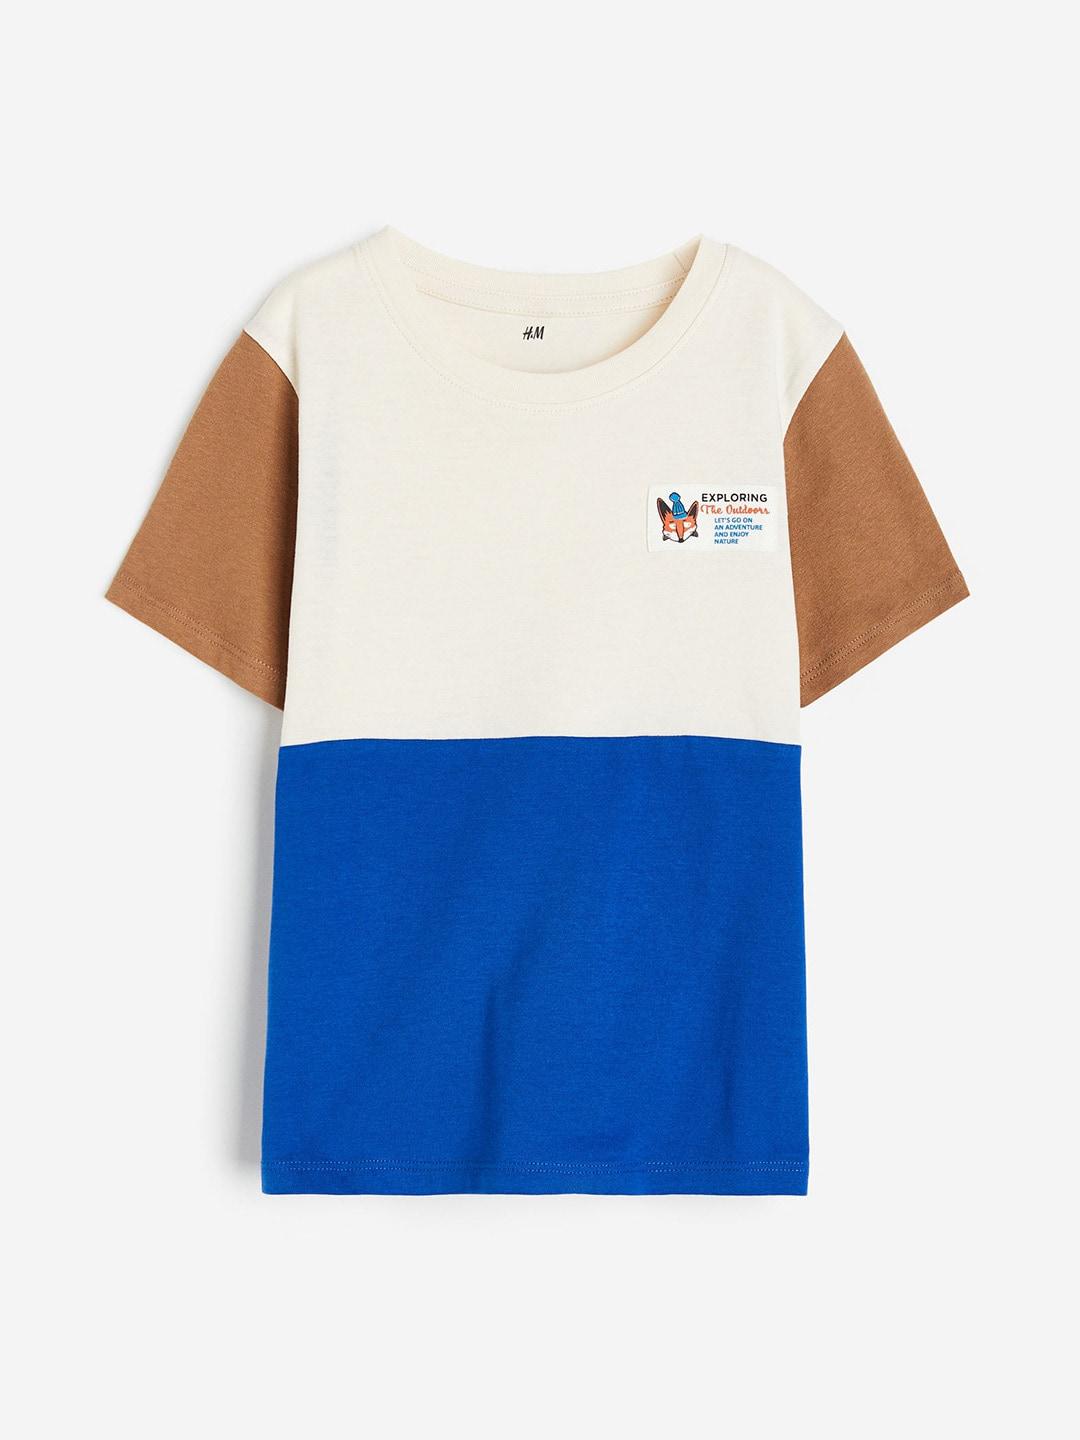 h&m boys cotton block-coloured t-shirt